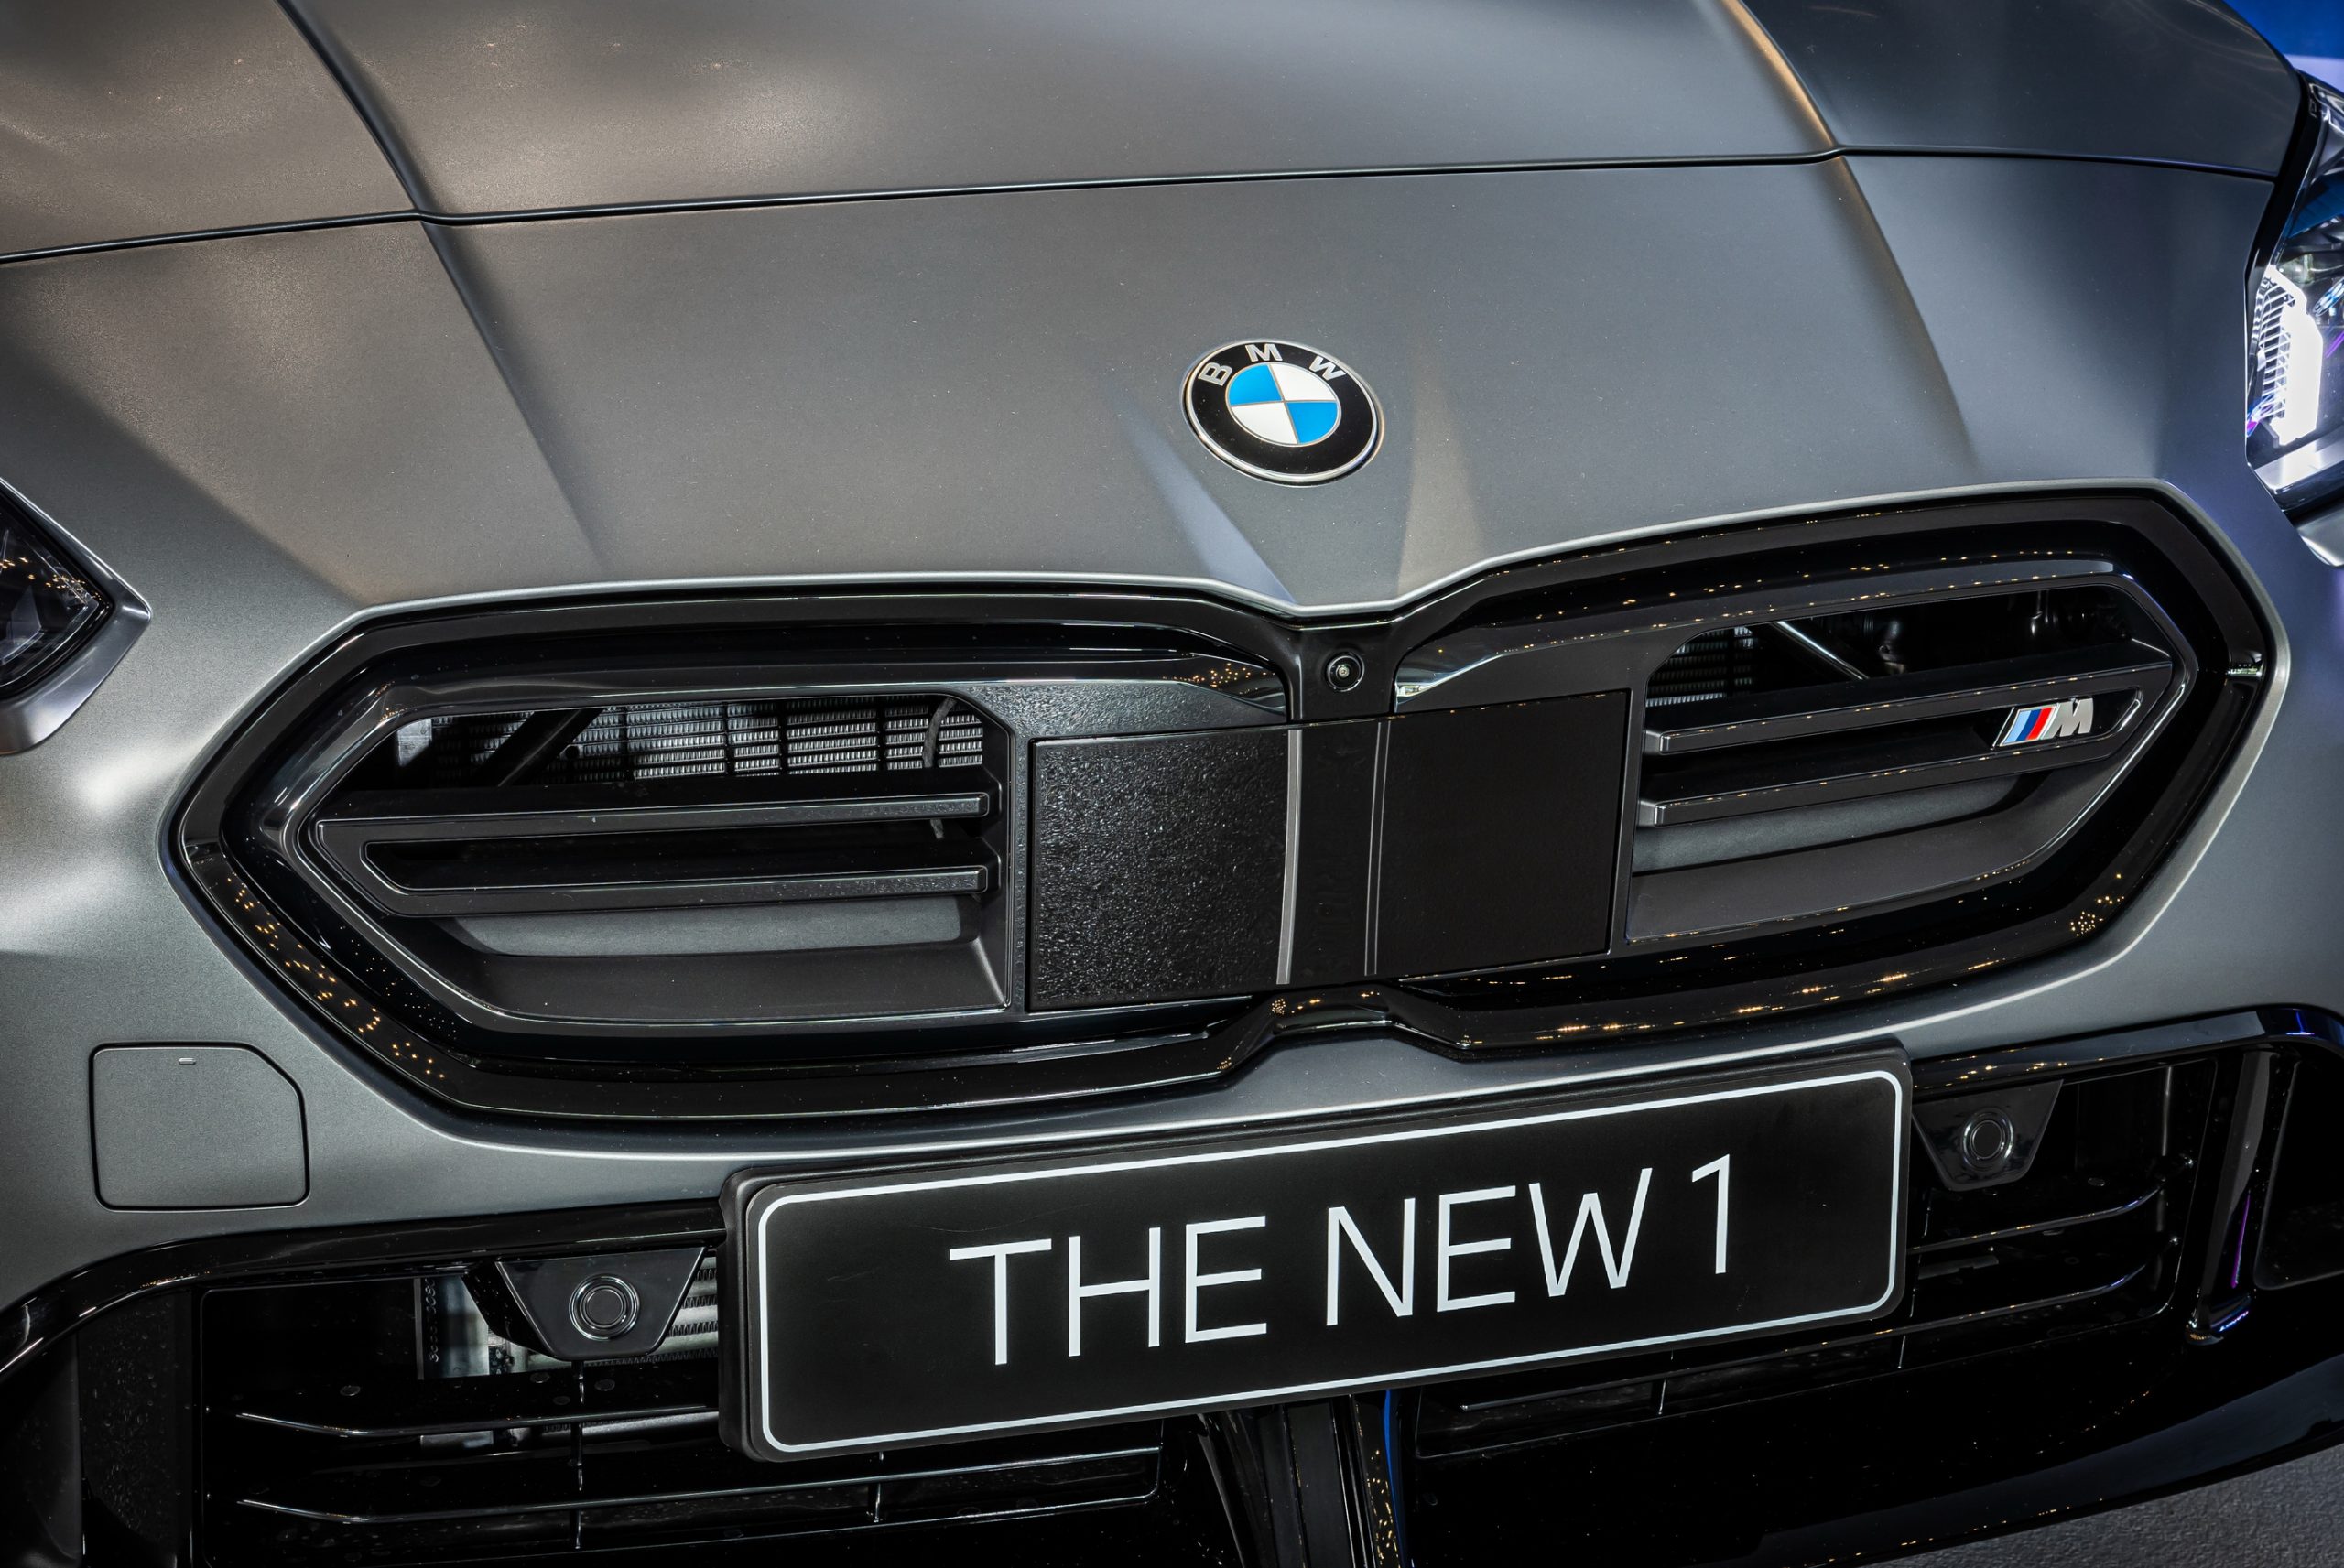 Στην Ελλάδα η νέα BMW Σειρά 1 (τιμές)